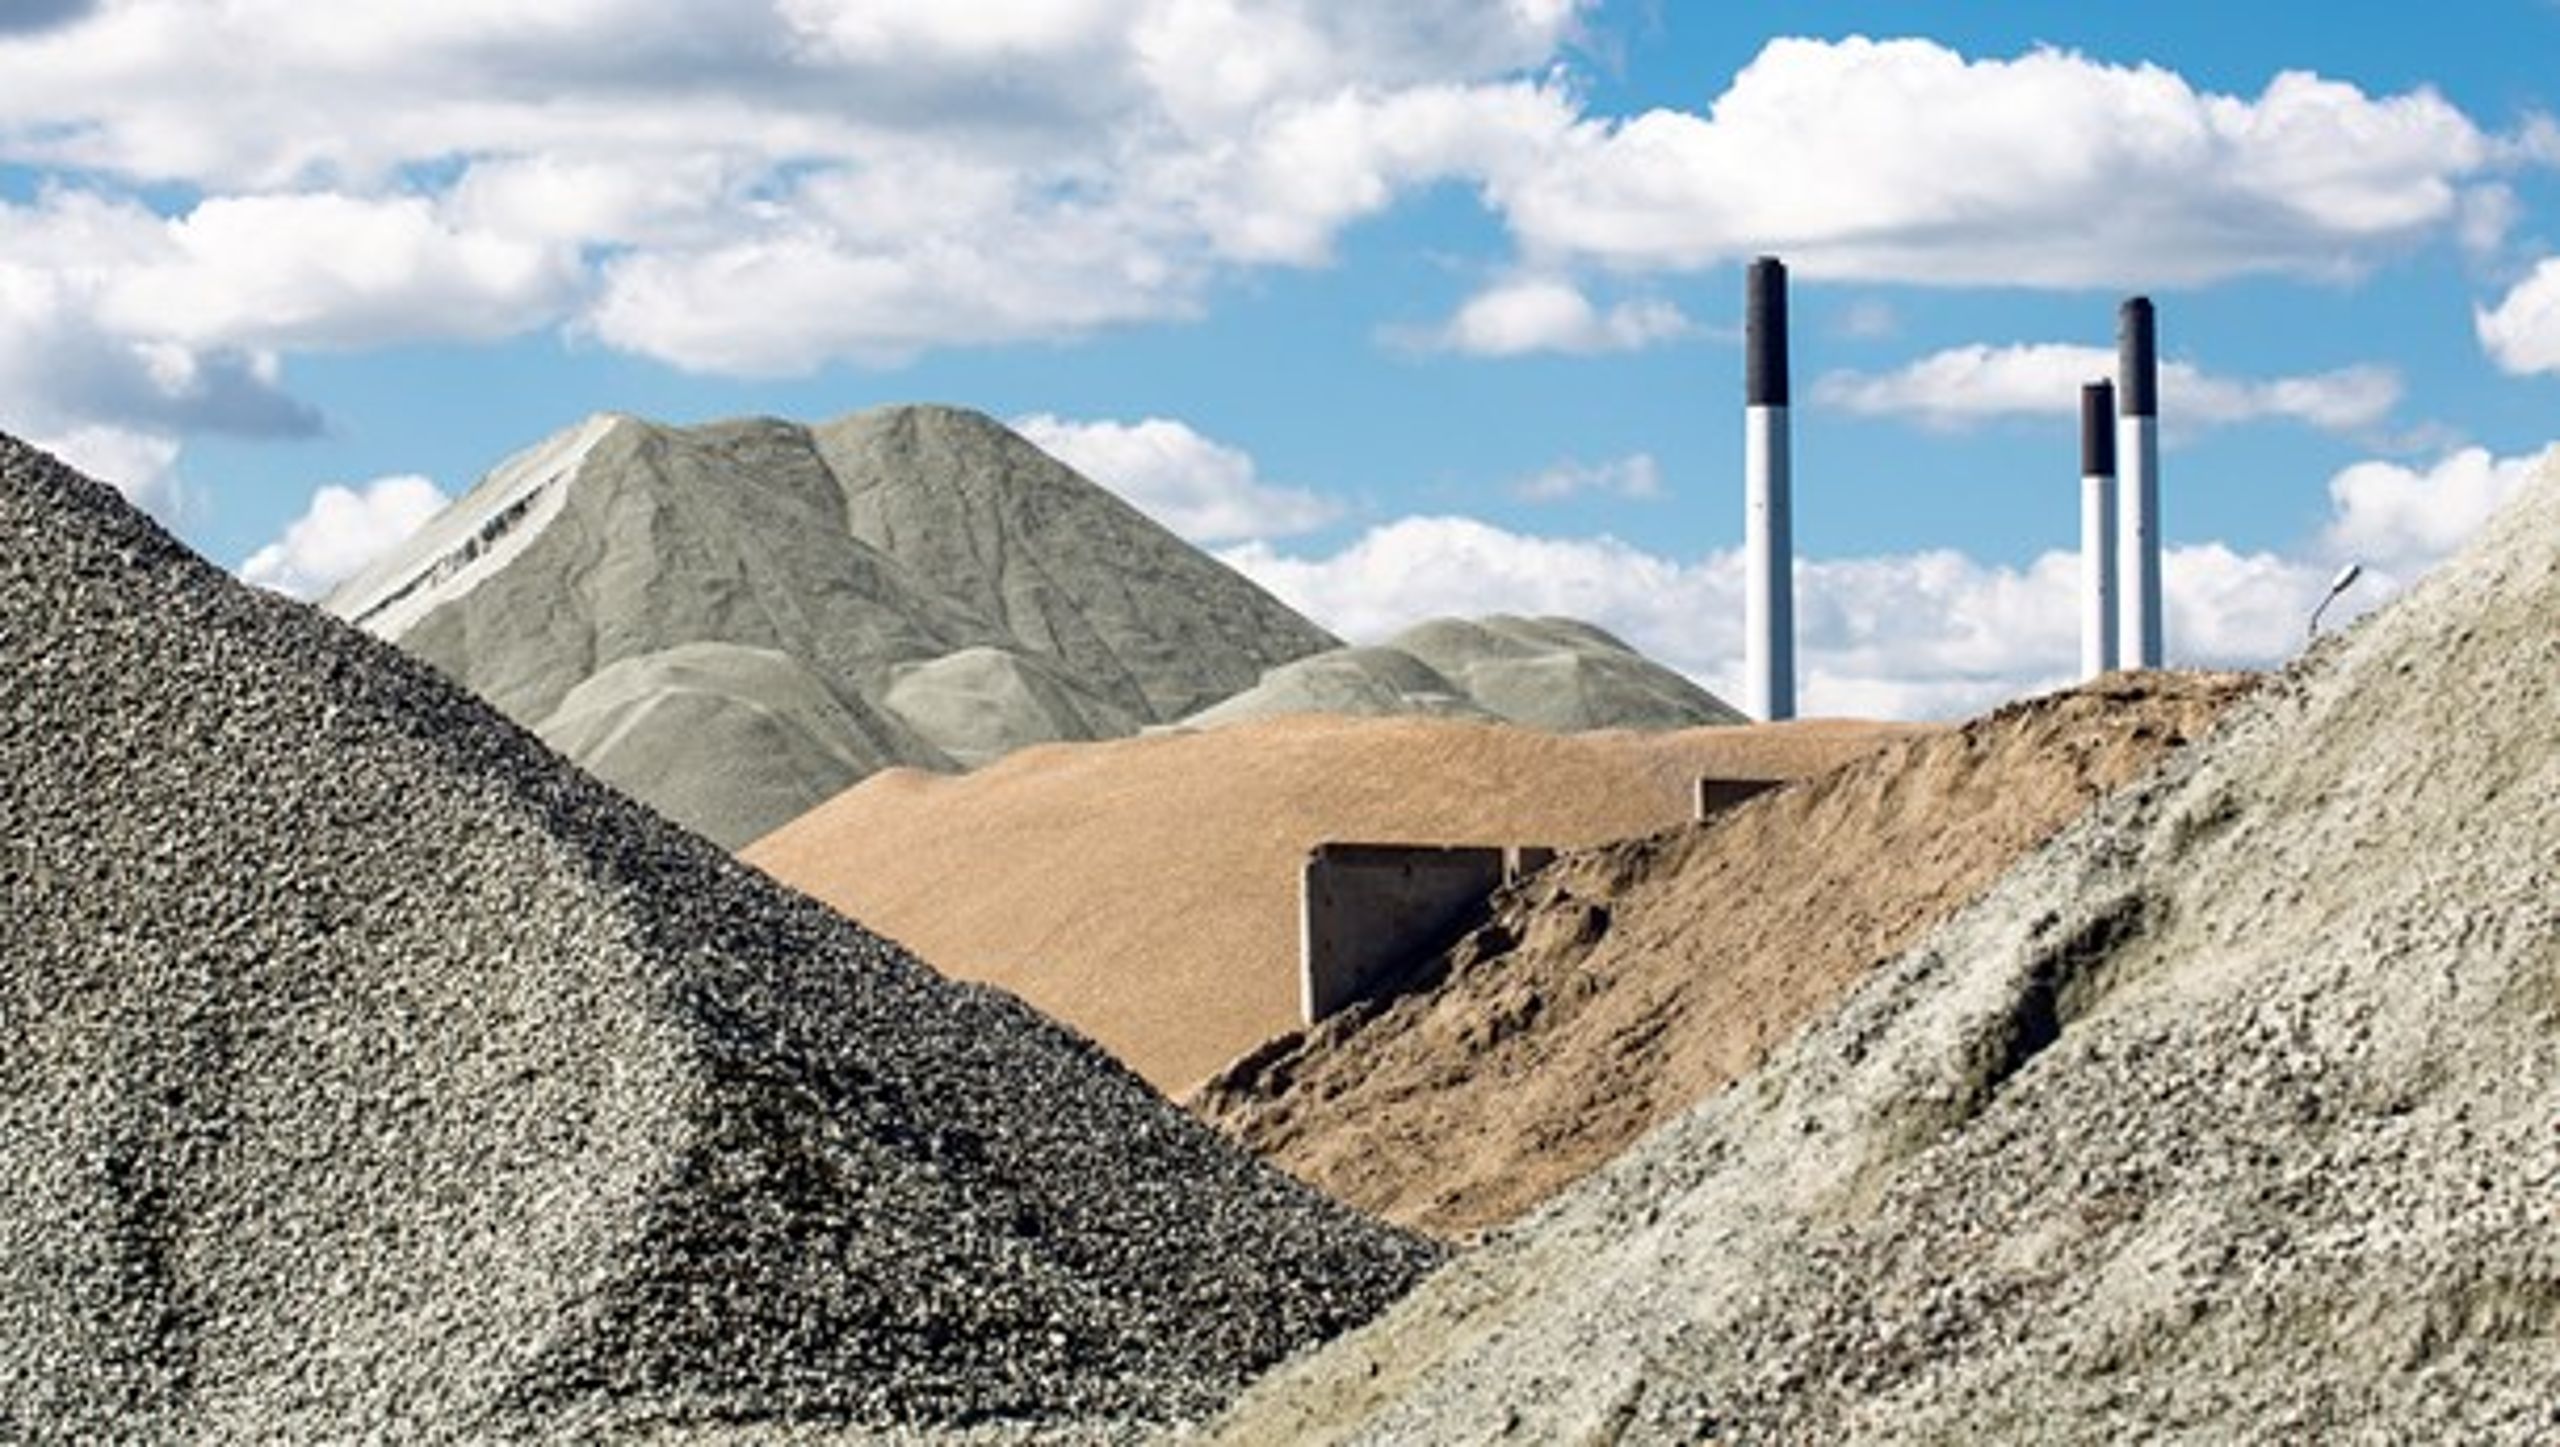 Råstoffer som grus, sand og sten er på sigt i fare for at slippe op, skriver Heino Knudsen (S).